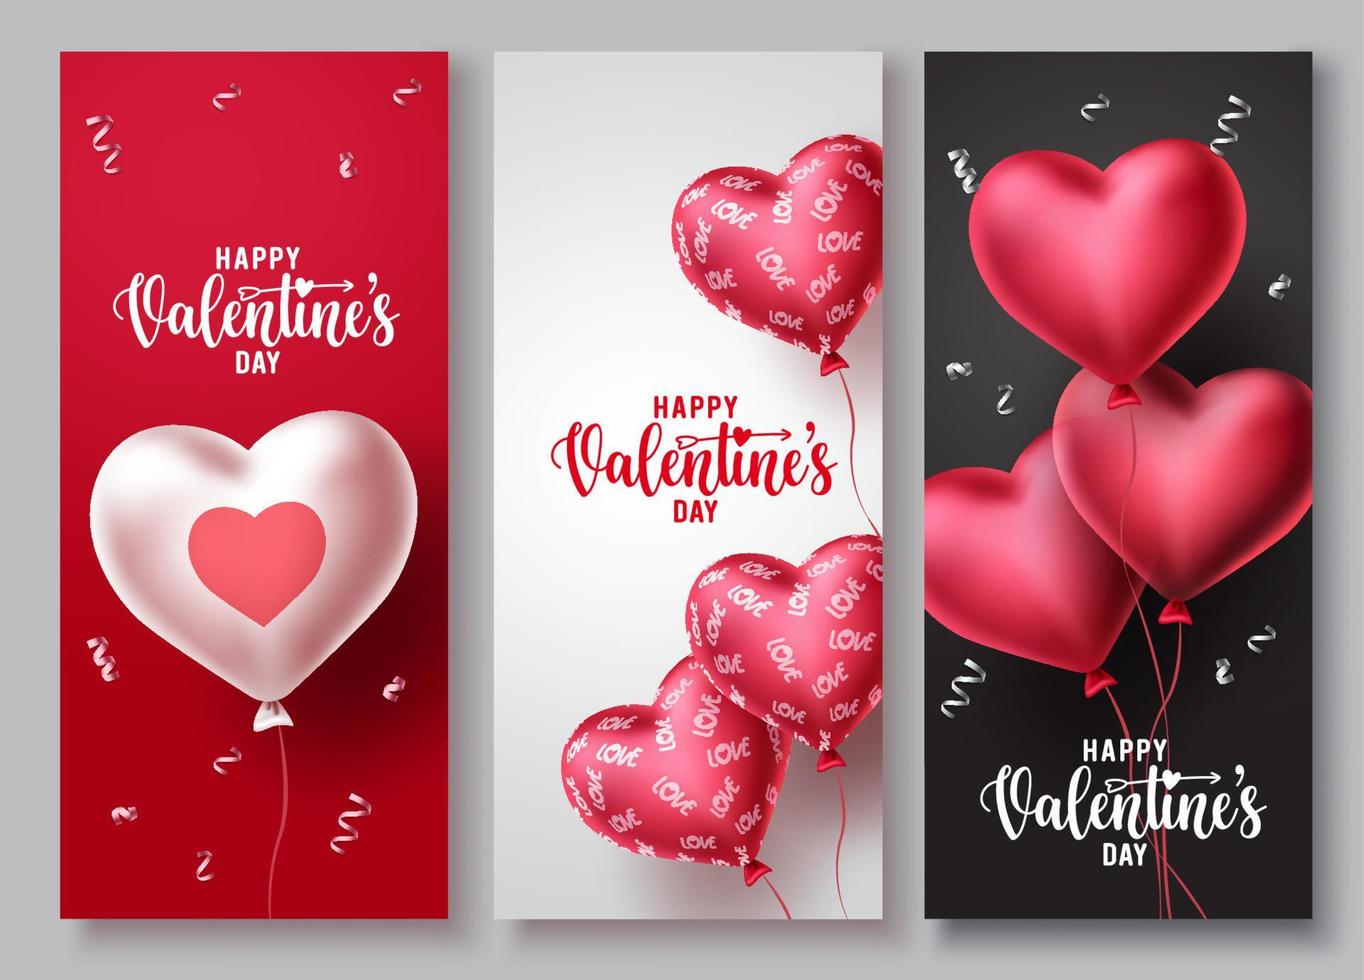 gelukkige Valentijnsdag vector poster achtergrond instellen. Valentijnsdag groet tekst achtergrond collectie met harten vorm ballon en patronen elementen. vectorillustratie.